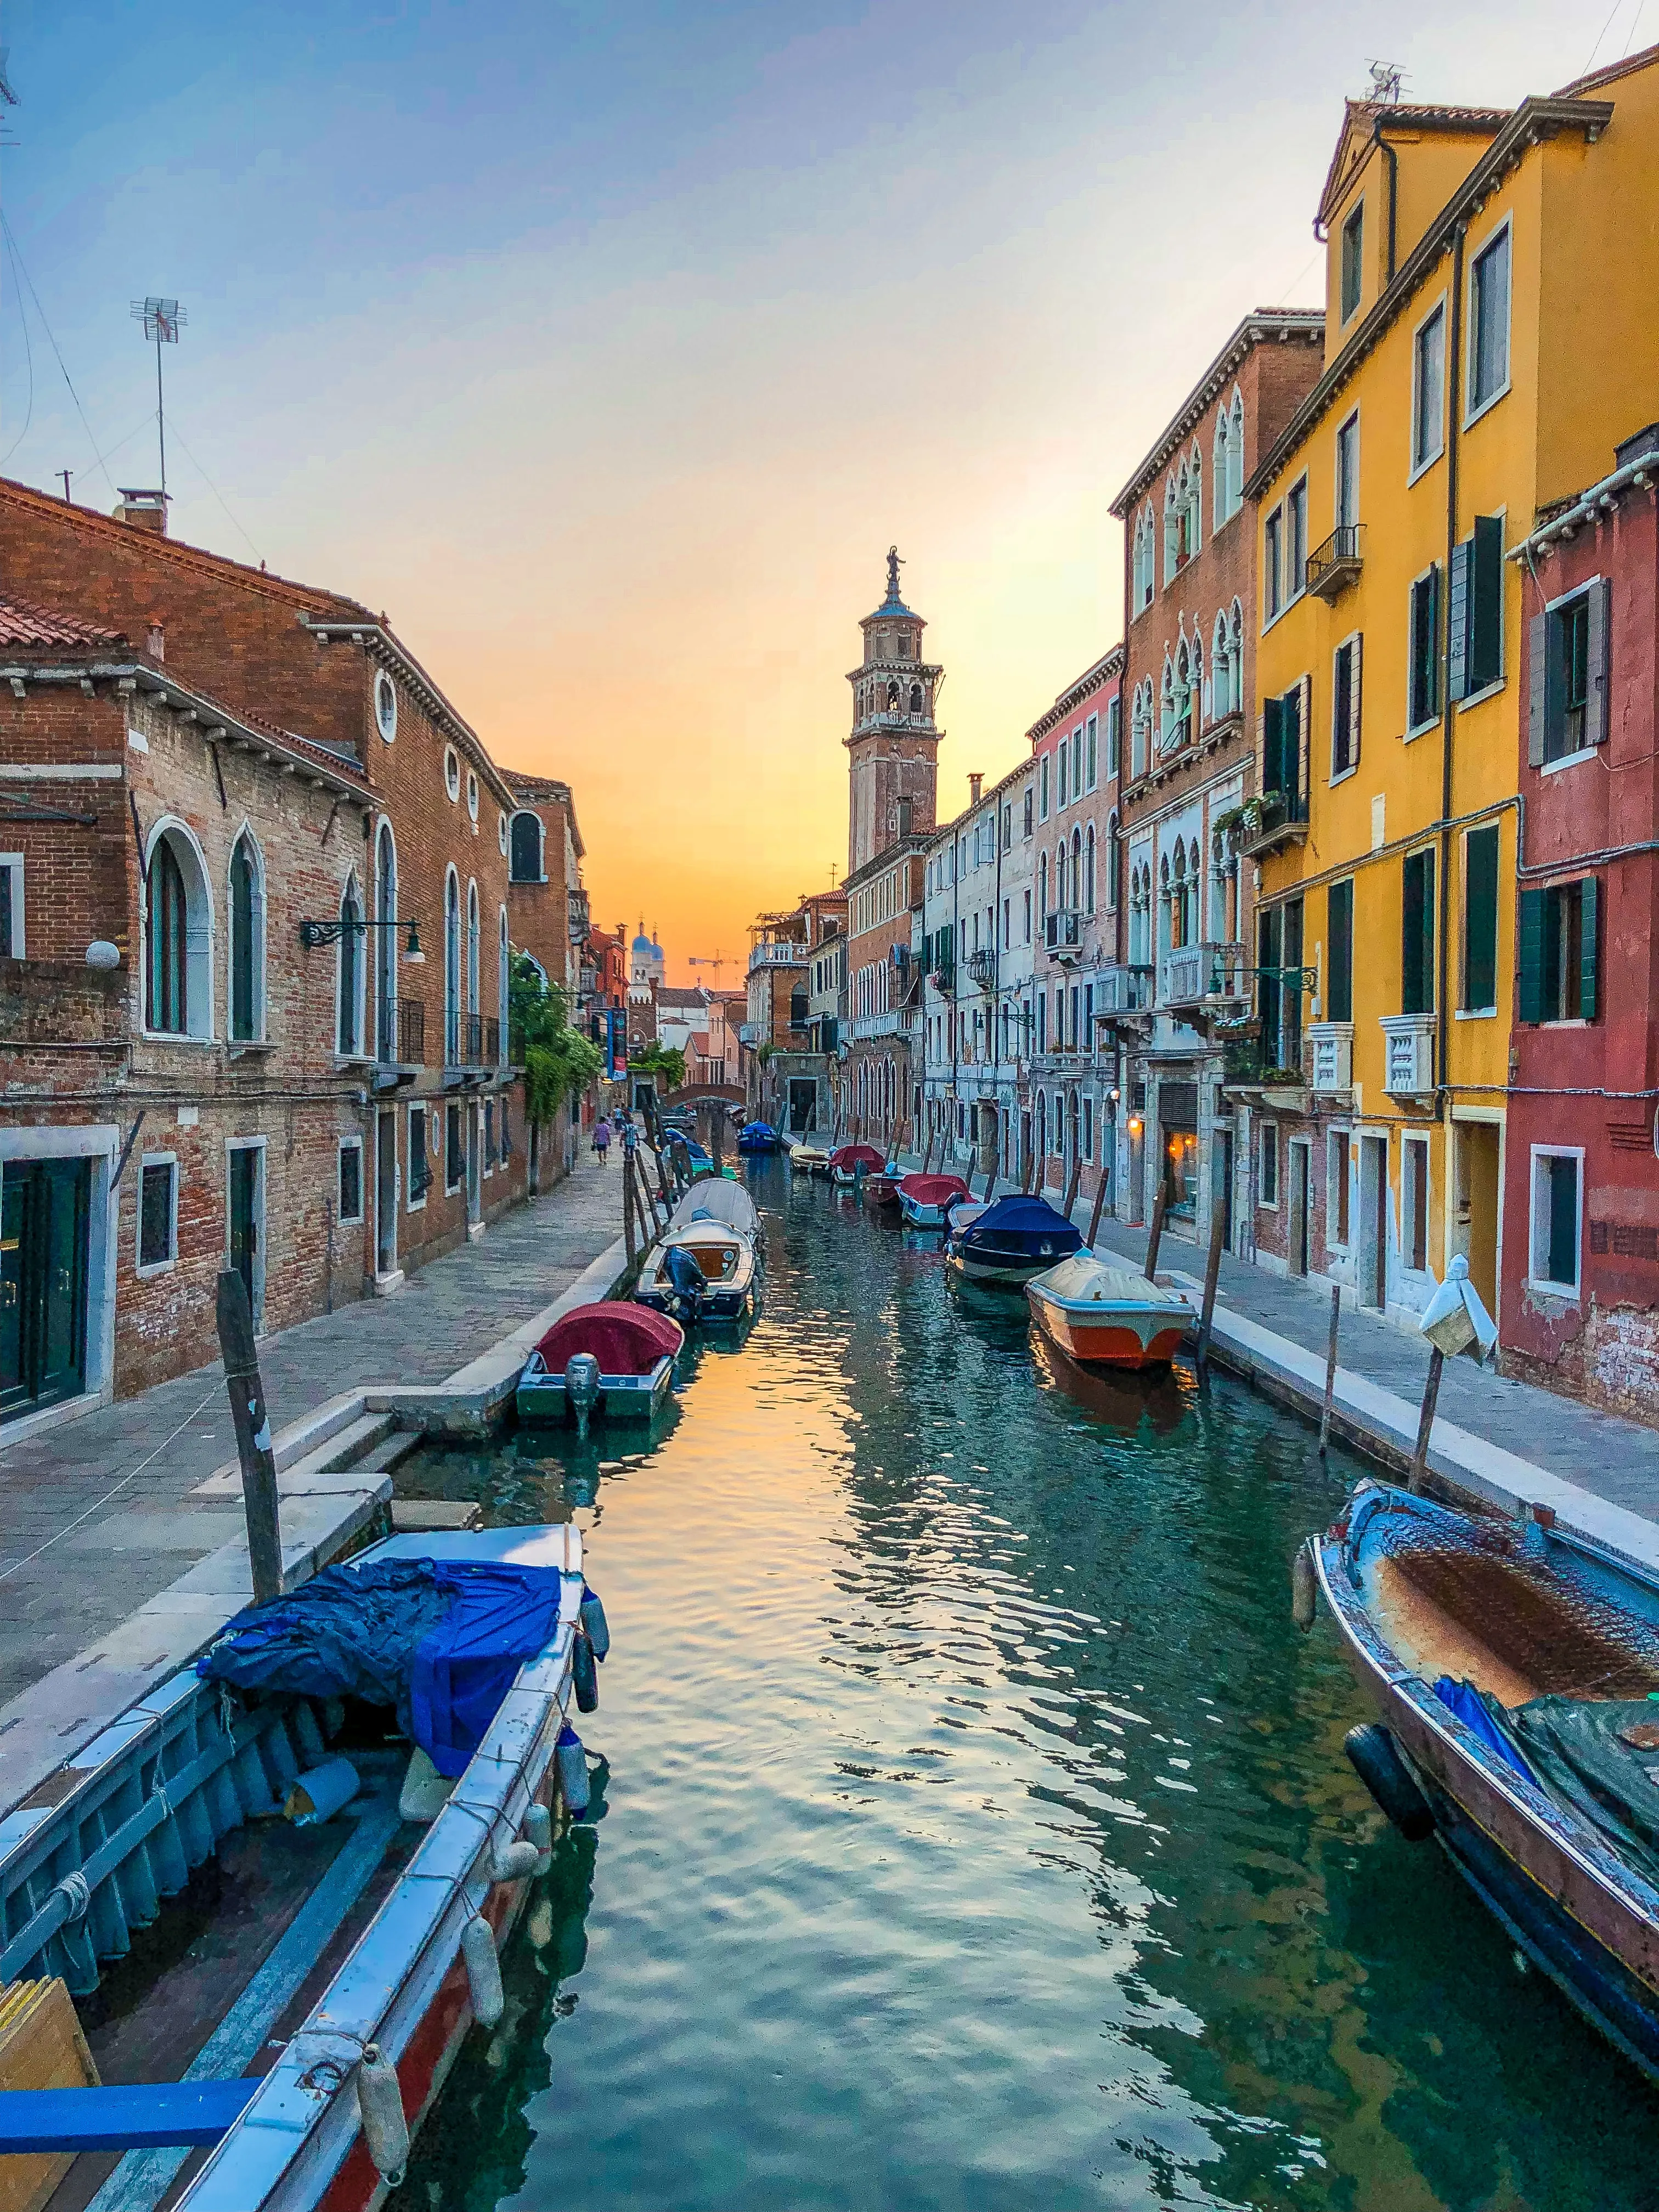 Експерти ЮНЕСКО не включили Венецію до списку об'єктів, які є під загрозою зникнення